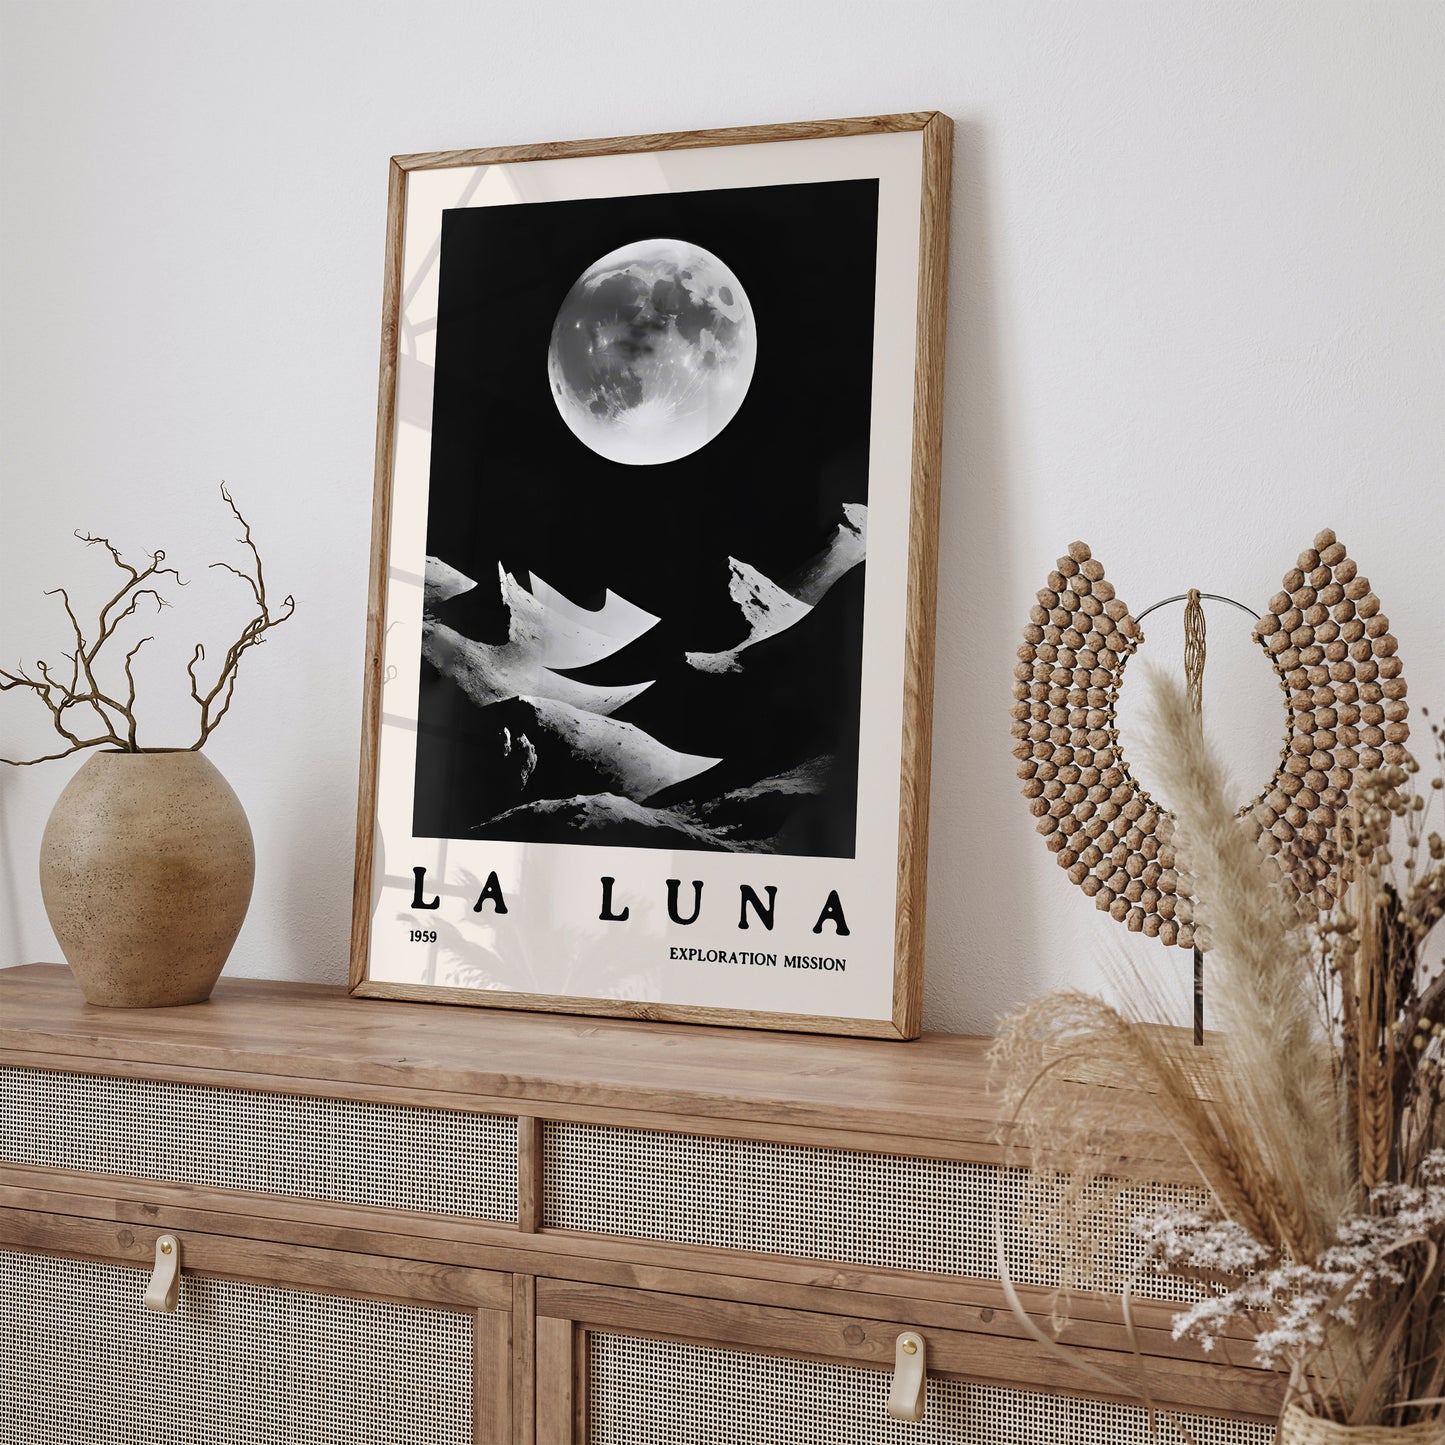 La Luna 1959 Exploration Poster